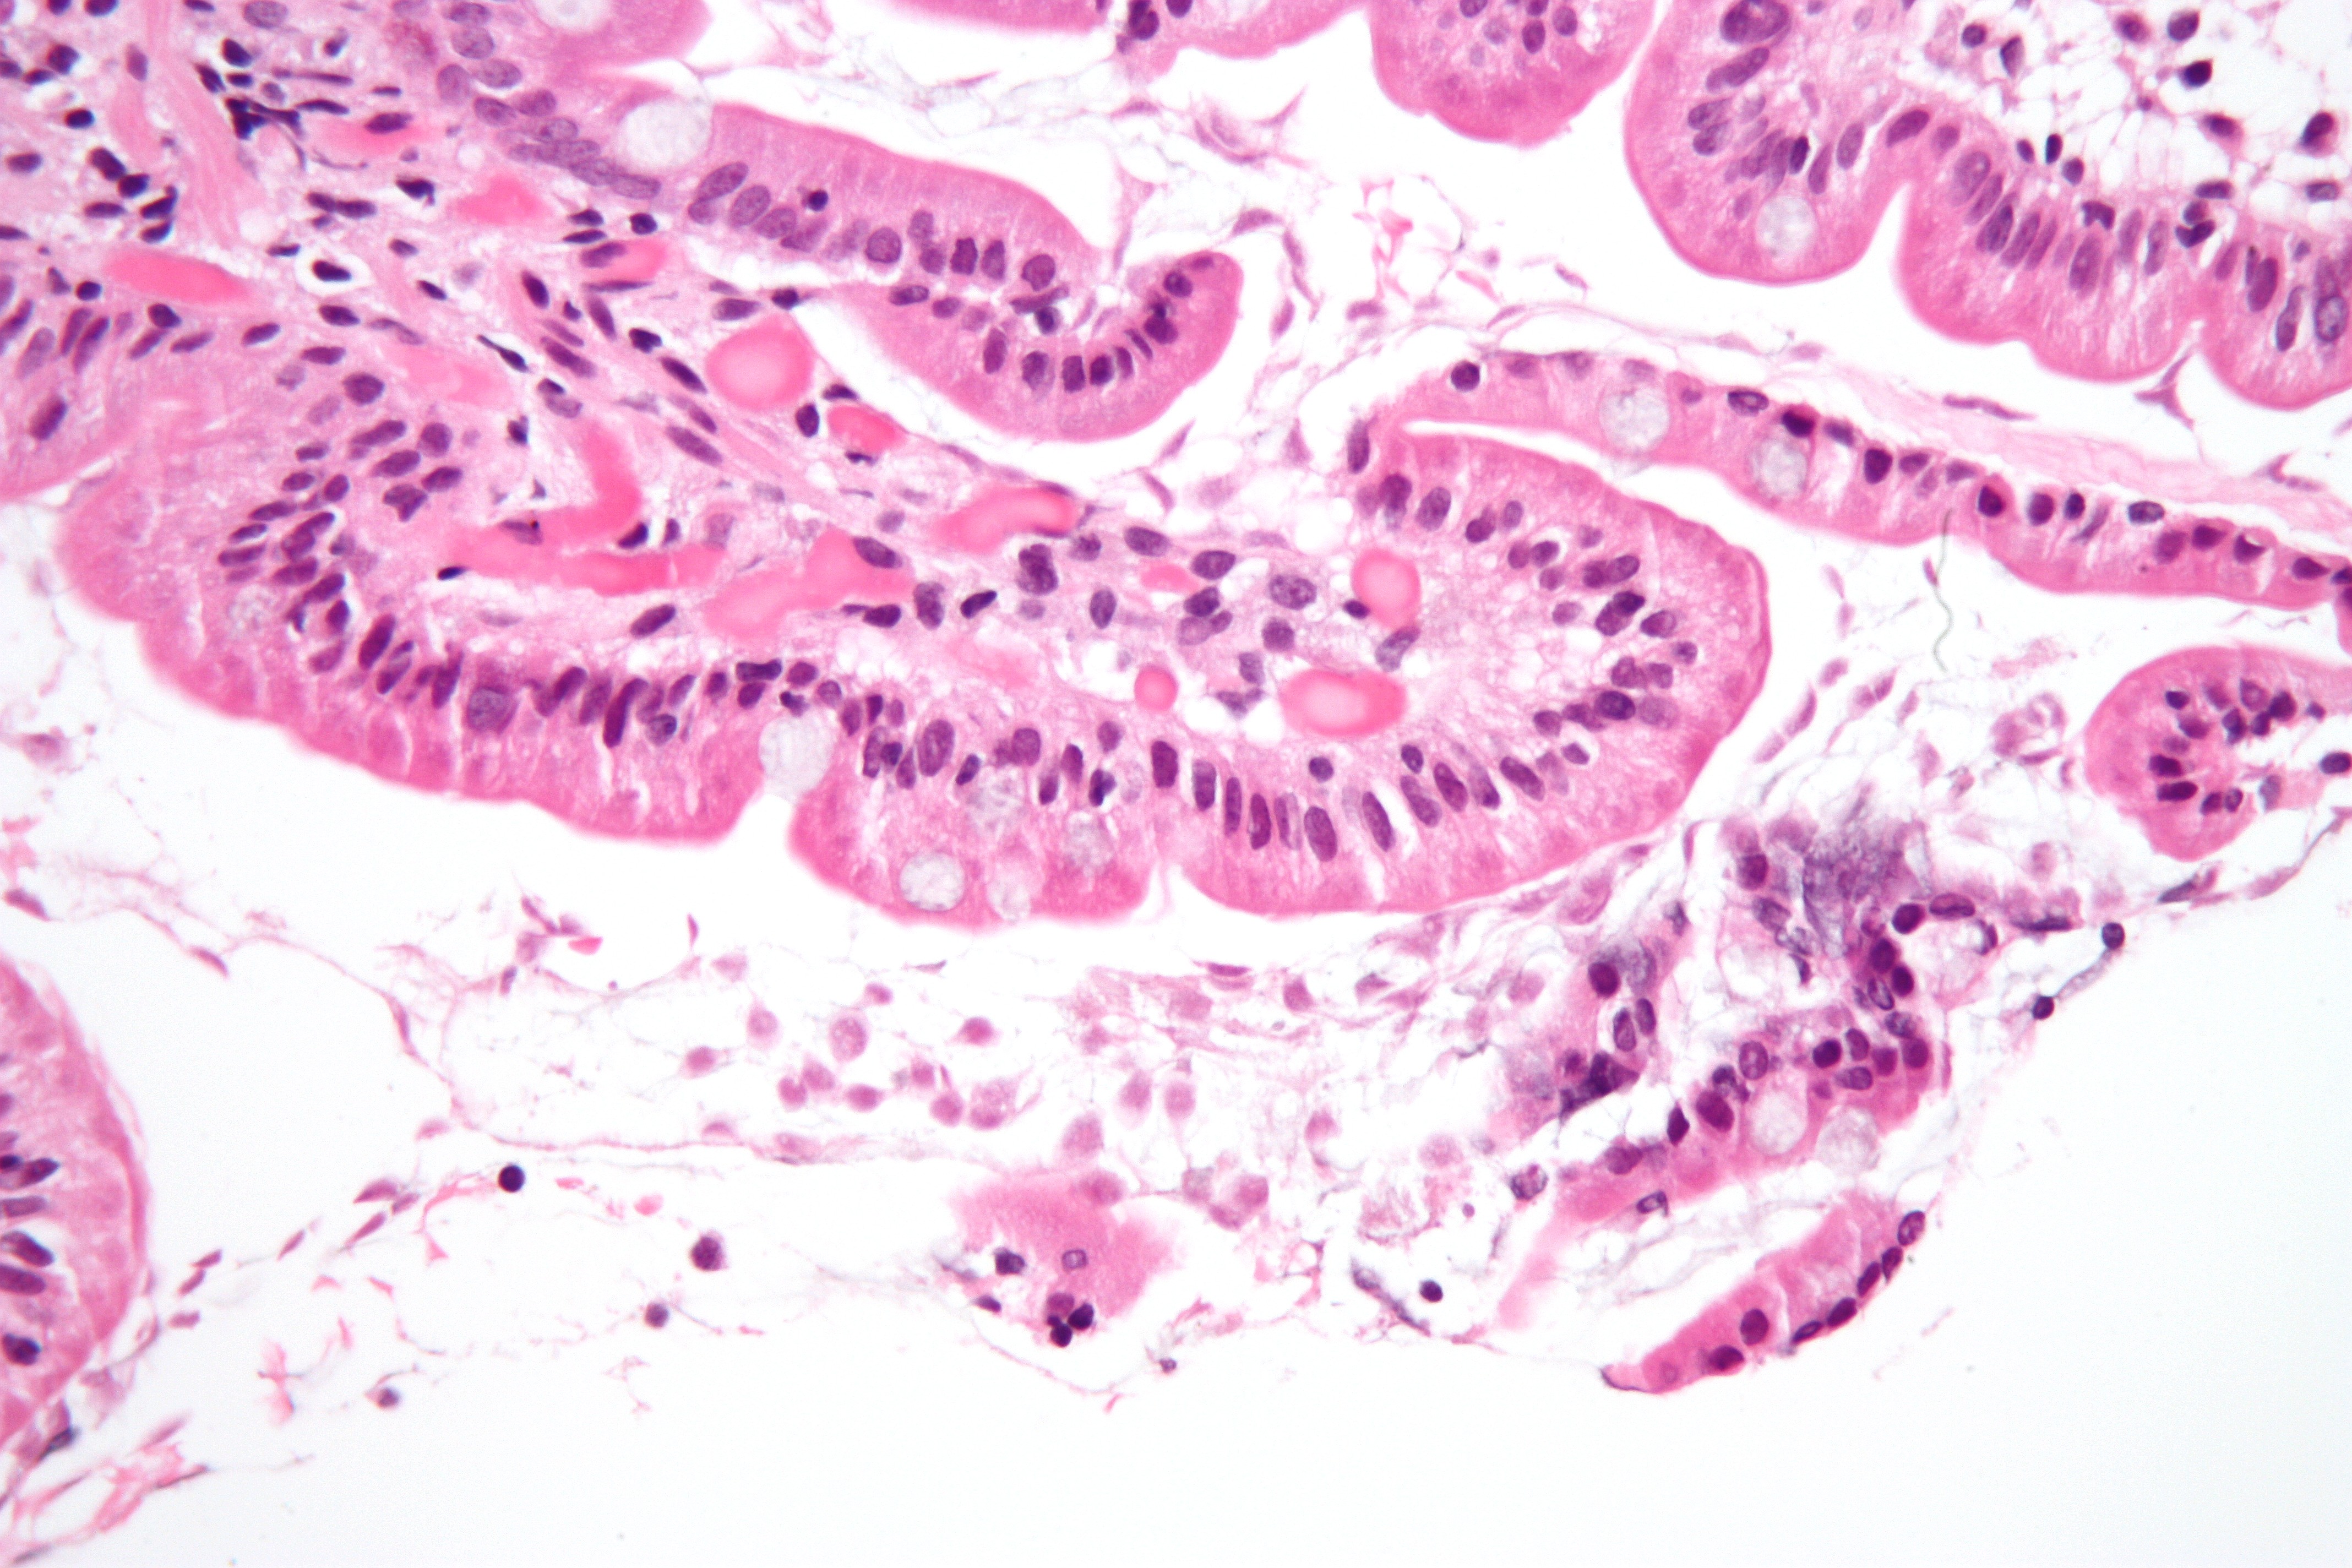 Giardiasis under the microscope